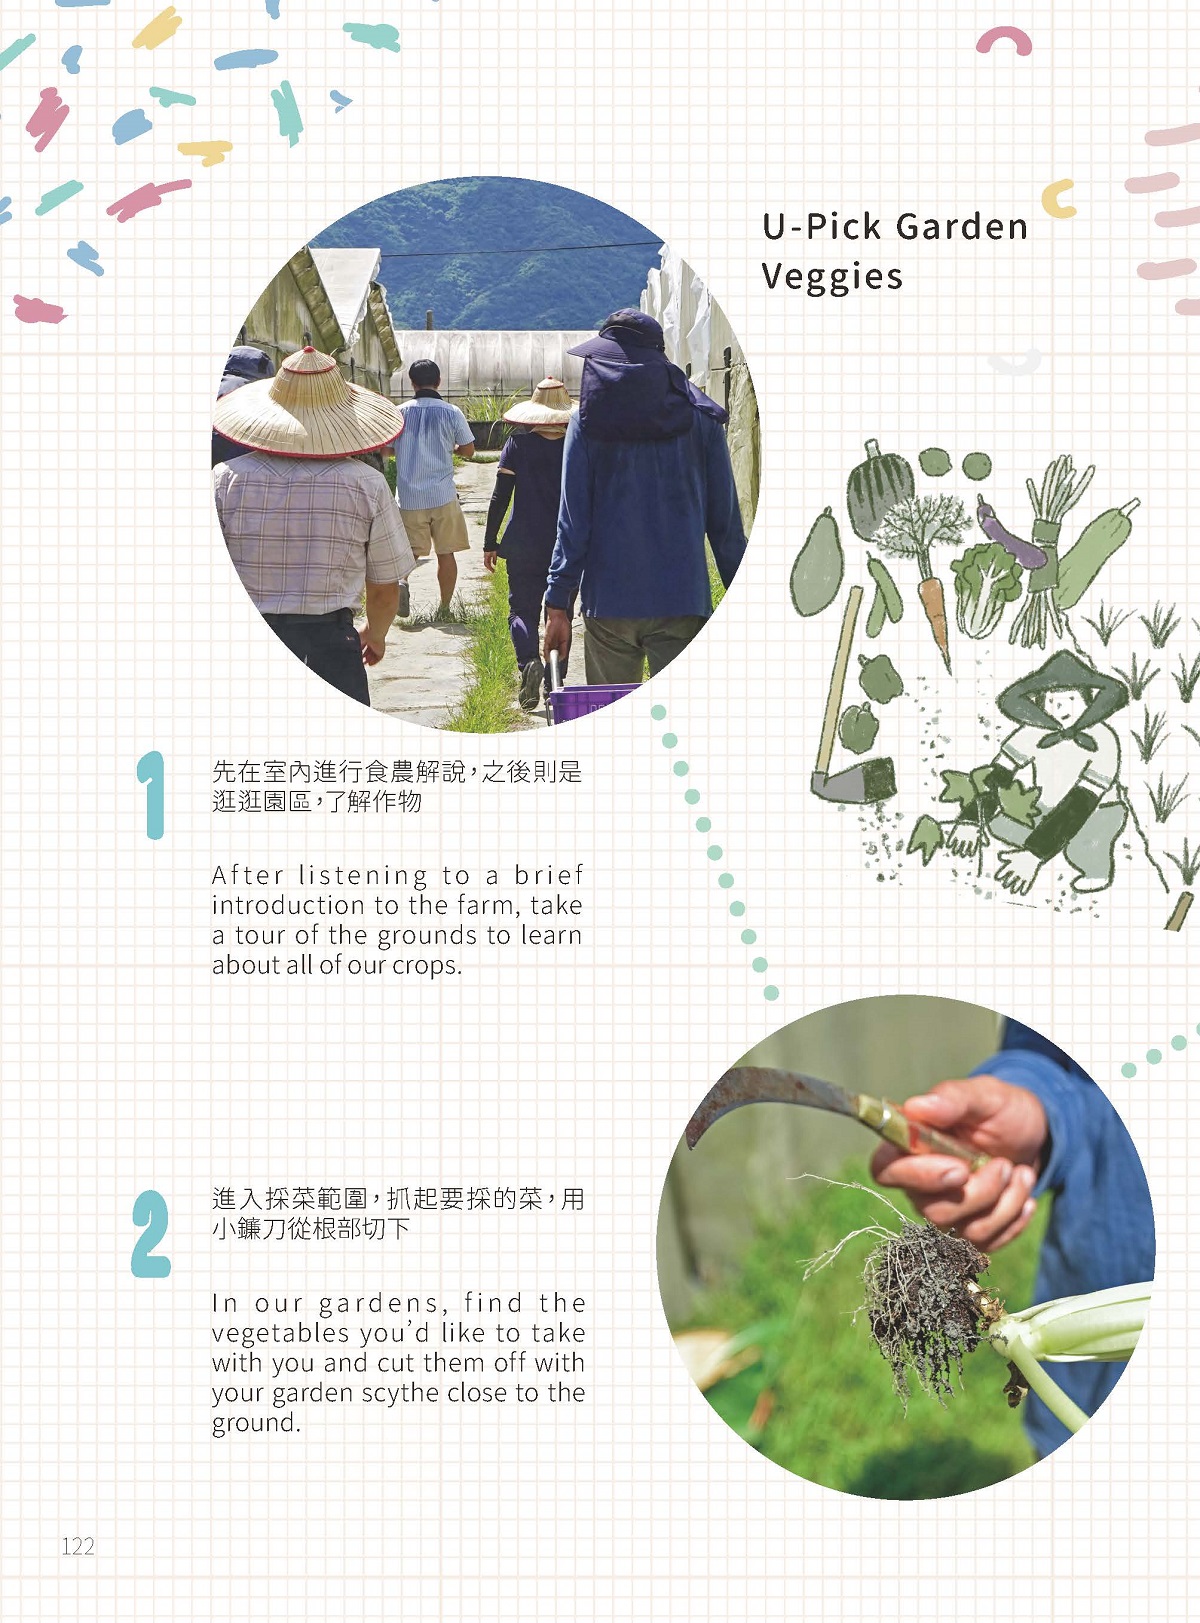 「有機蔬果樂」—一窺大農場的運作佳豐有機農場Chia - Fong Organic Farm-7